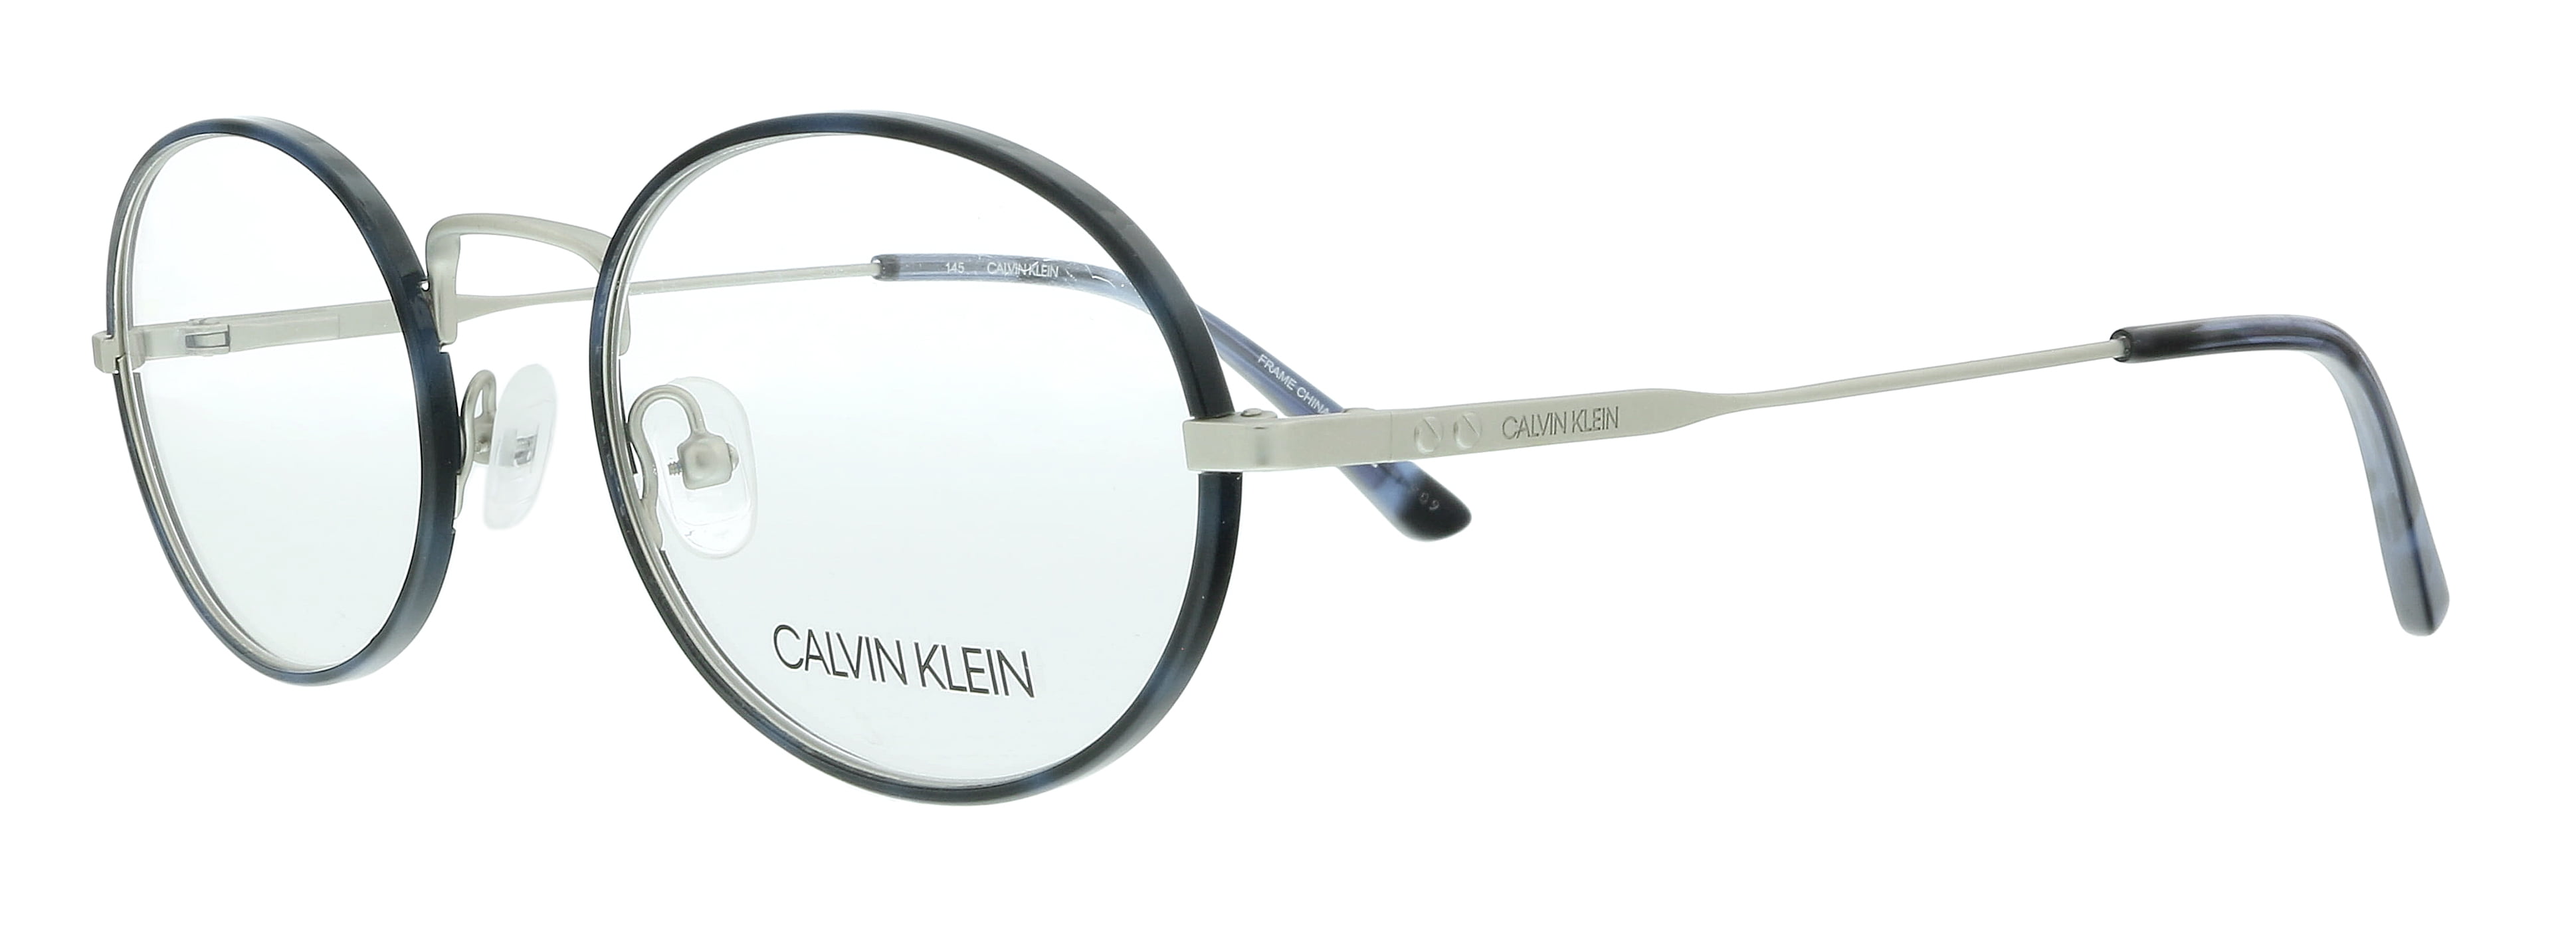 Calvin Klein CK20115 456 Navy Tortoise Oval Eyeglasses for Mens